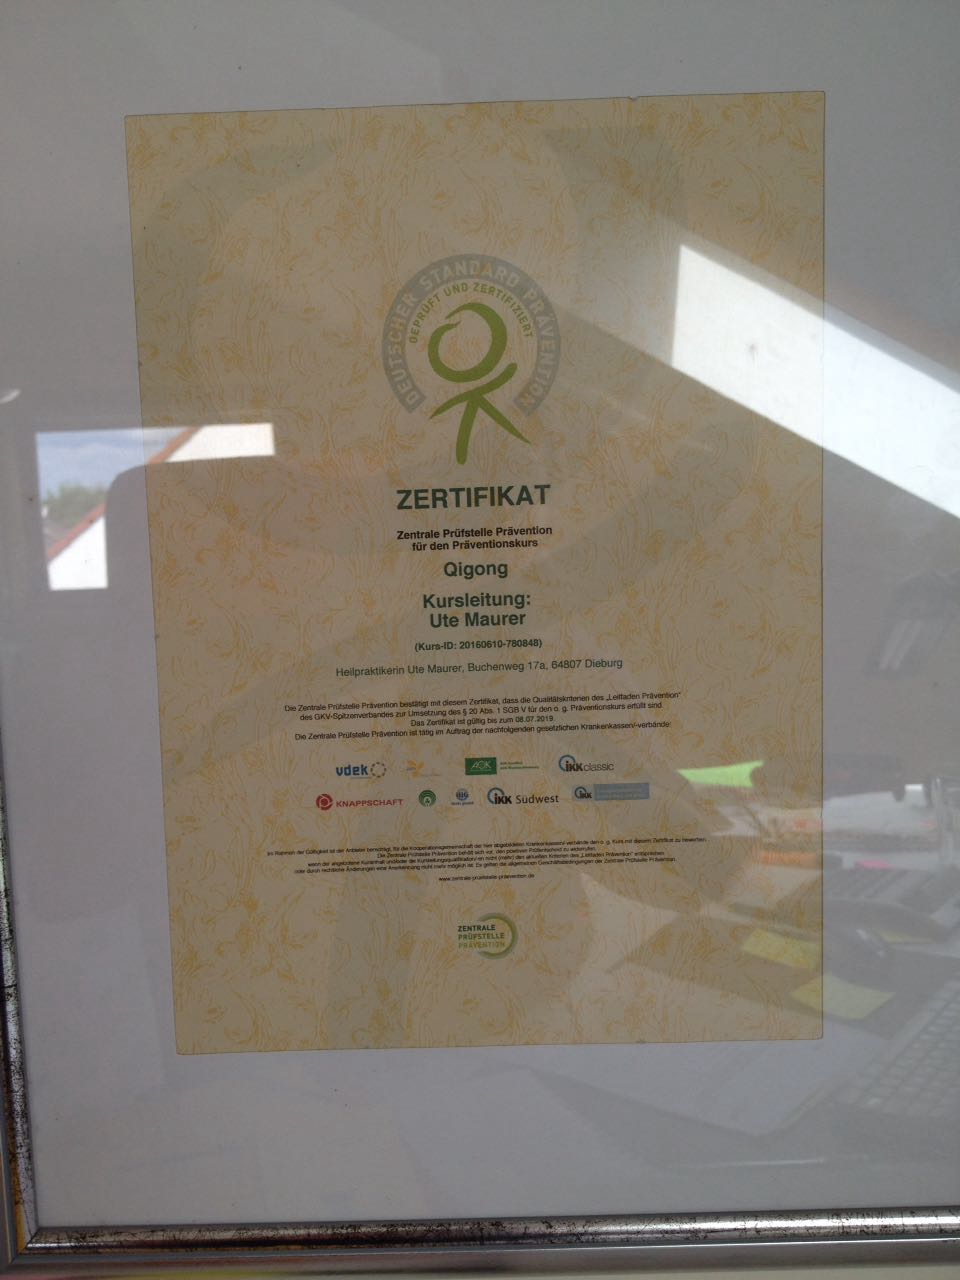 Mein Zertifikat der Zentralen Prüfstelle Prävention als Qigonglehrerin